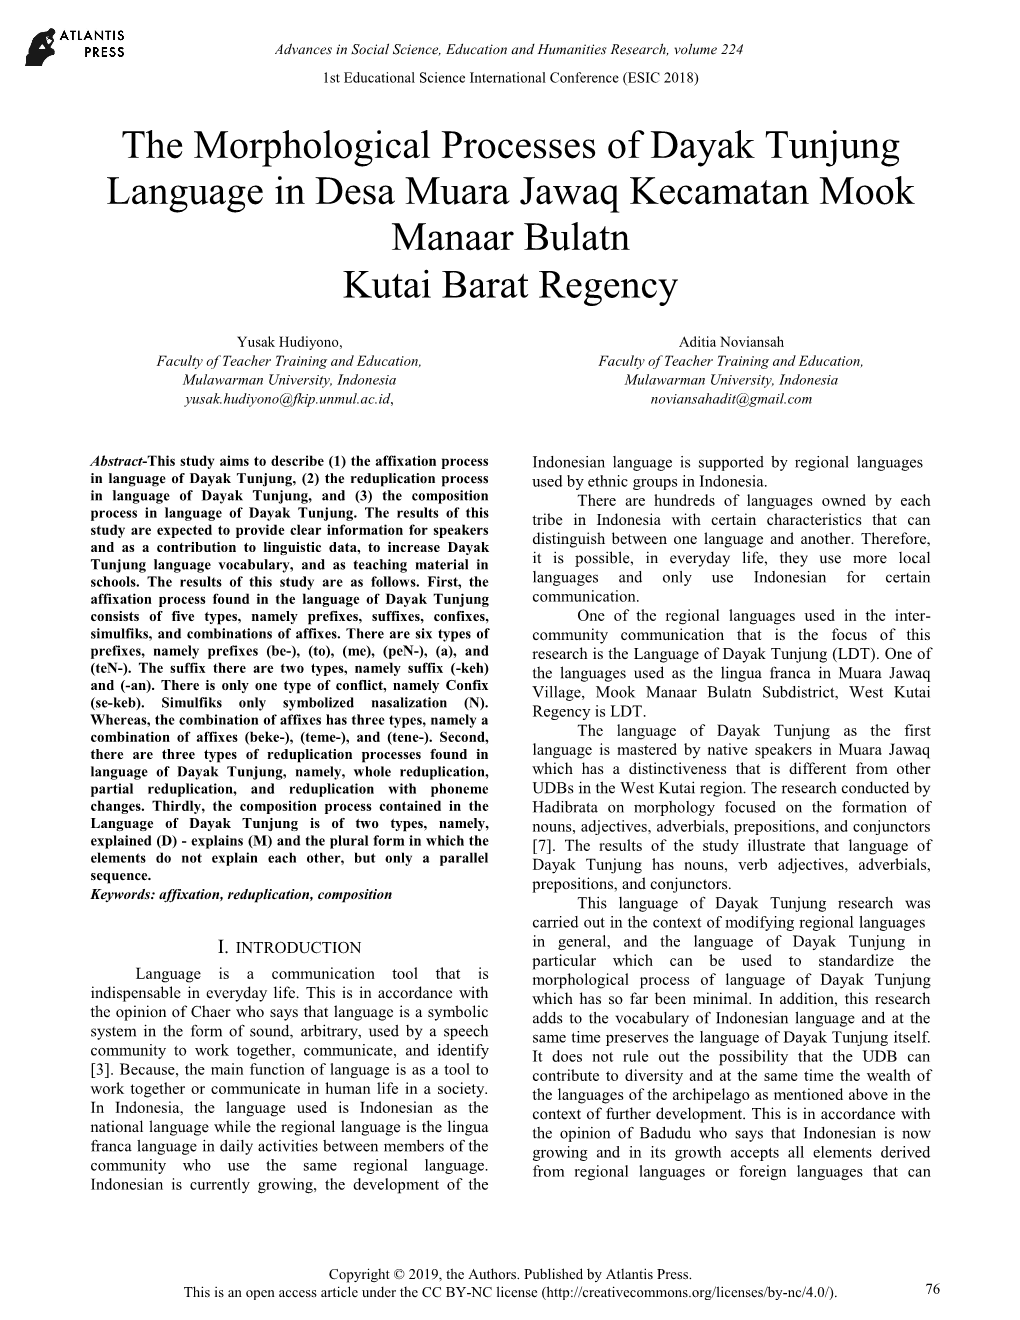 The Morphological Processes of Dayak Tunjung Language in Desa Muara Jawaq Kecamatan Mook Manaar Bulatn Kutai Barat Regency